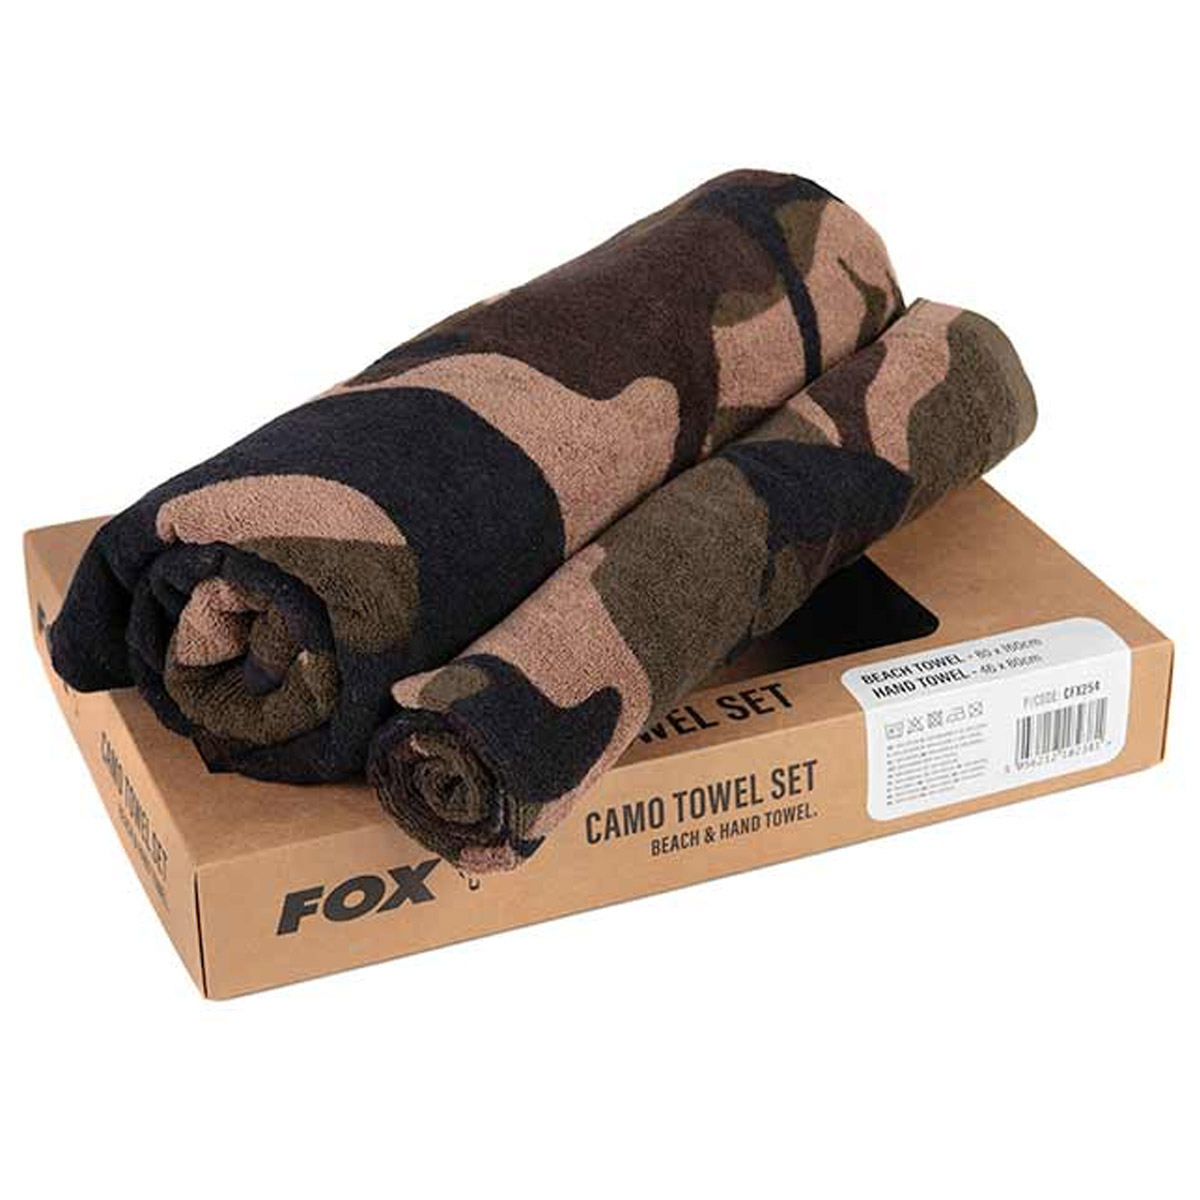 Fox Camo Towel Set